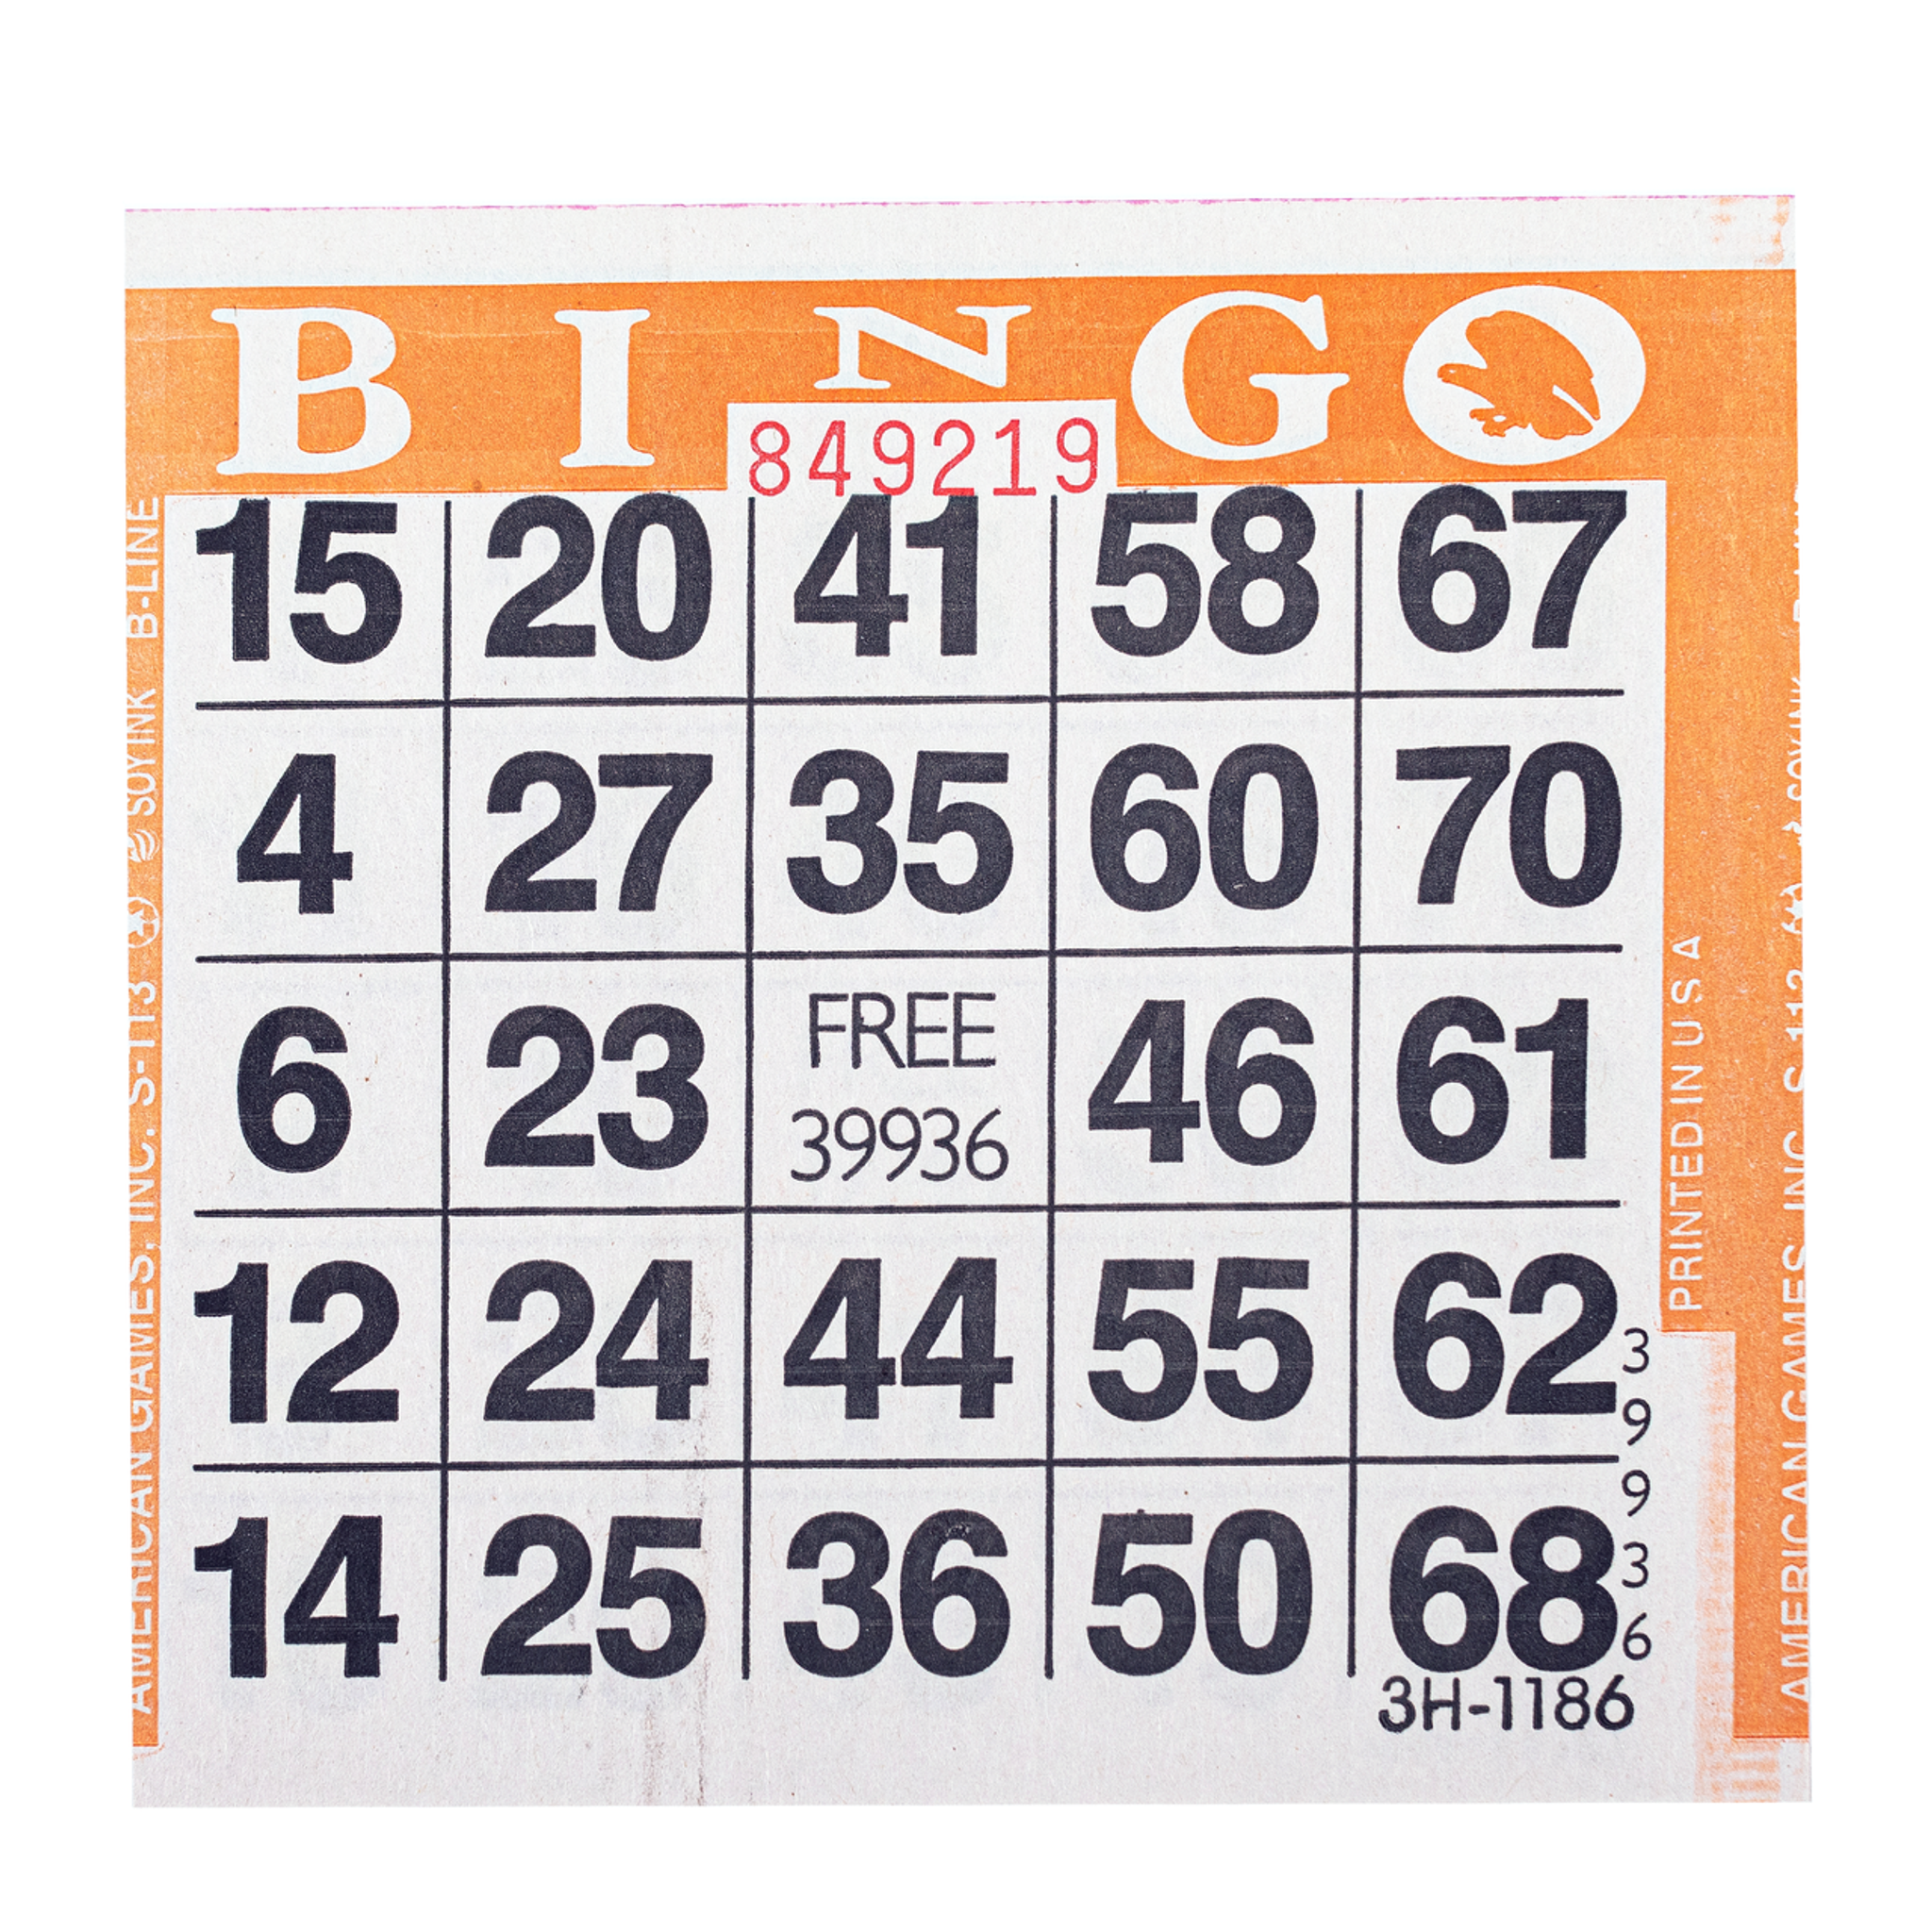 bingo ticket holders